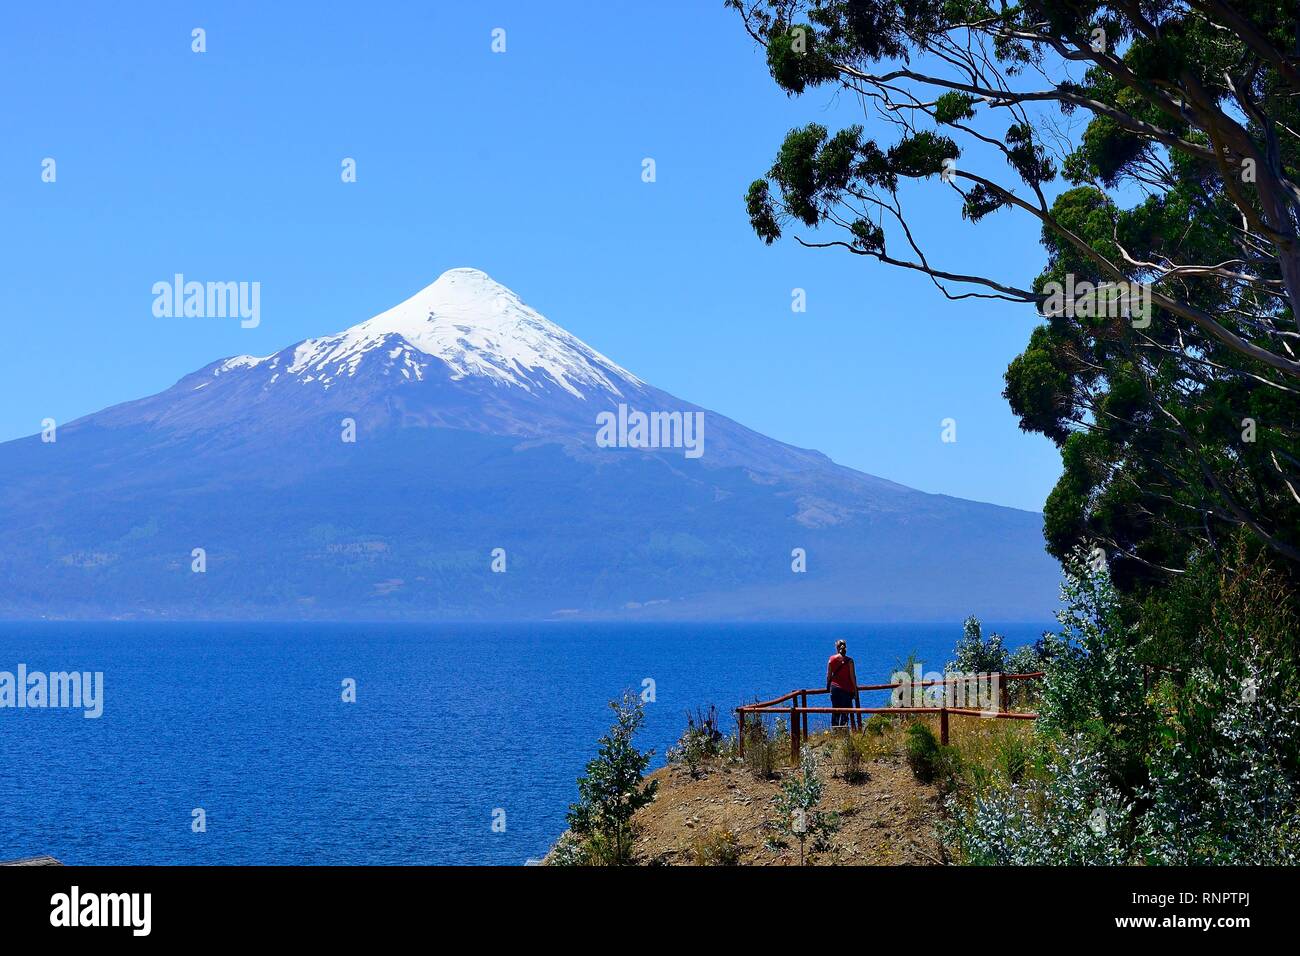 Volcán Osorno con nieve tapa en el Lago Llanquihue, Región de los Lagos, Chile Foto de stock